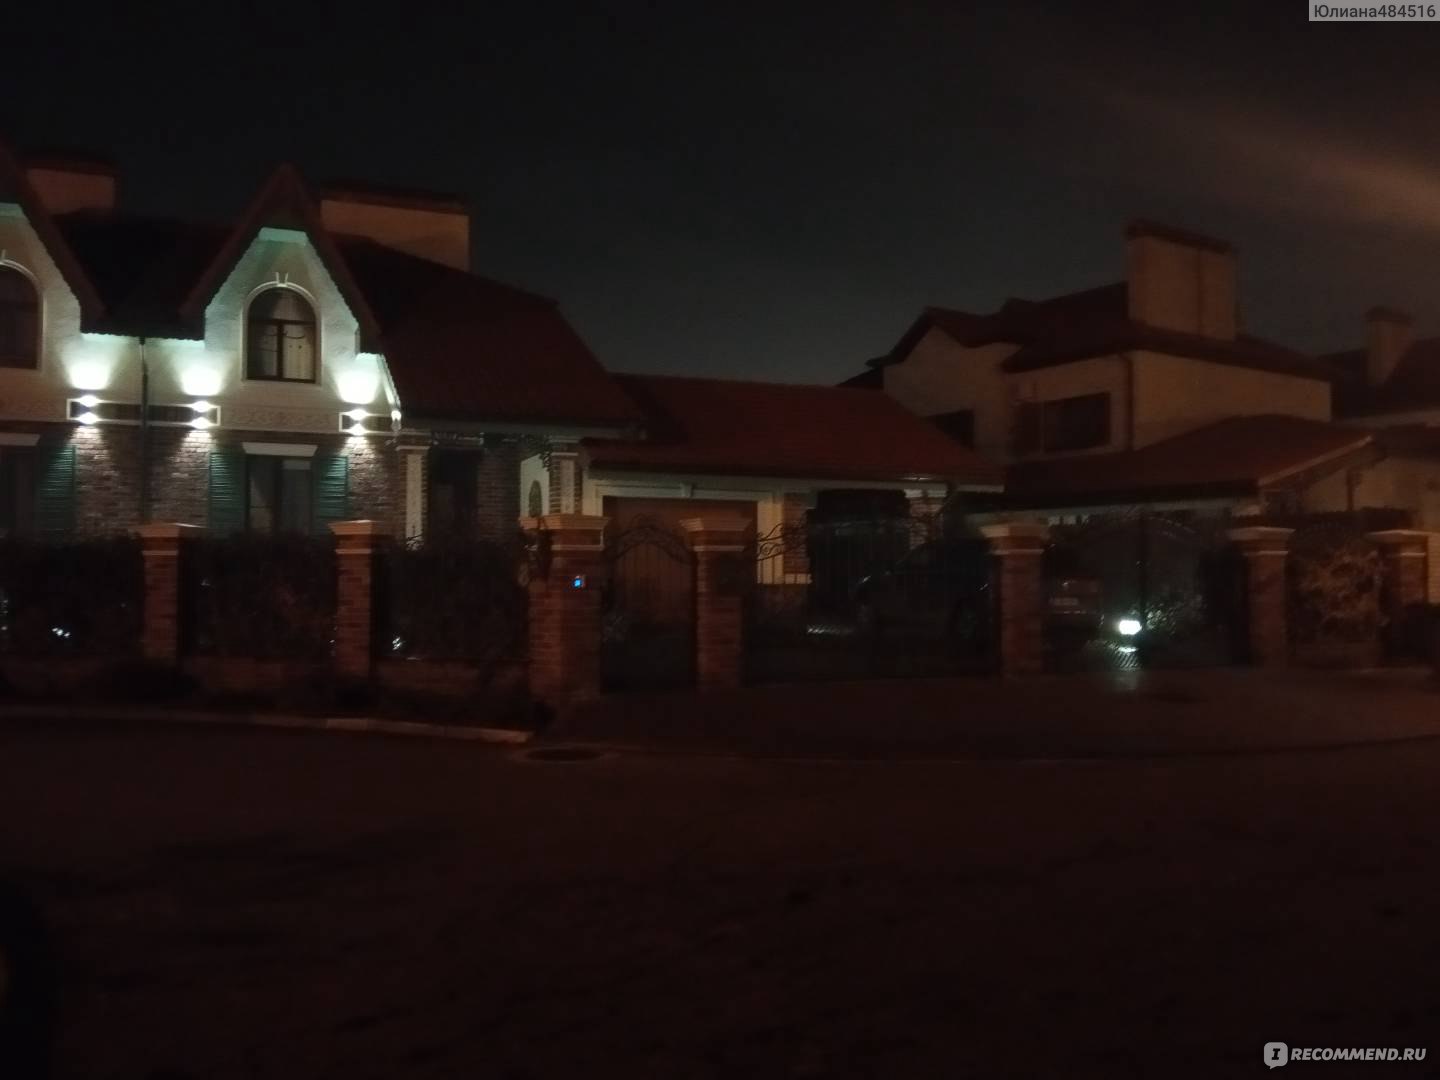 Продажа домов в жилом районе Немецкая деревня в Краснодаре Краснодар в Краснодарском крае